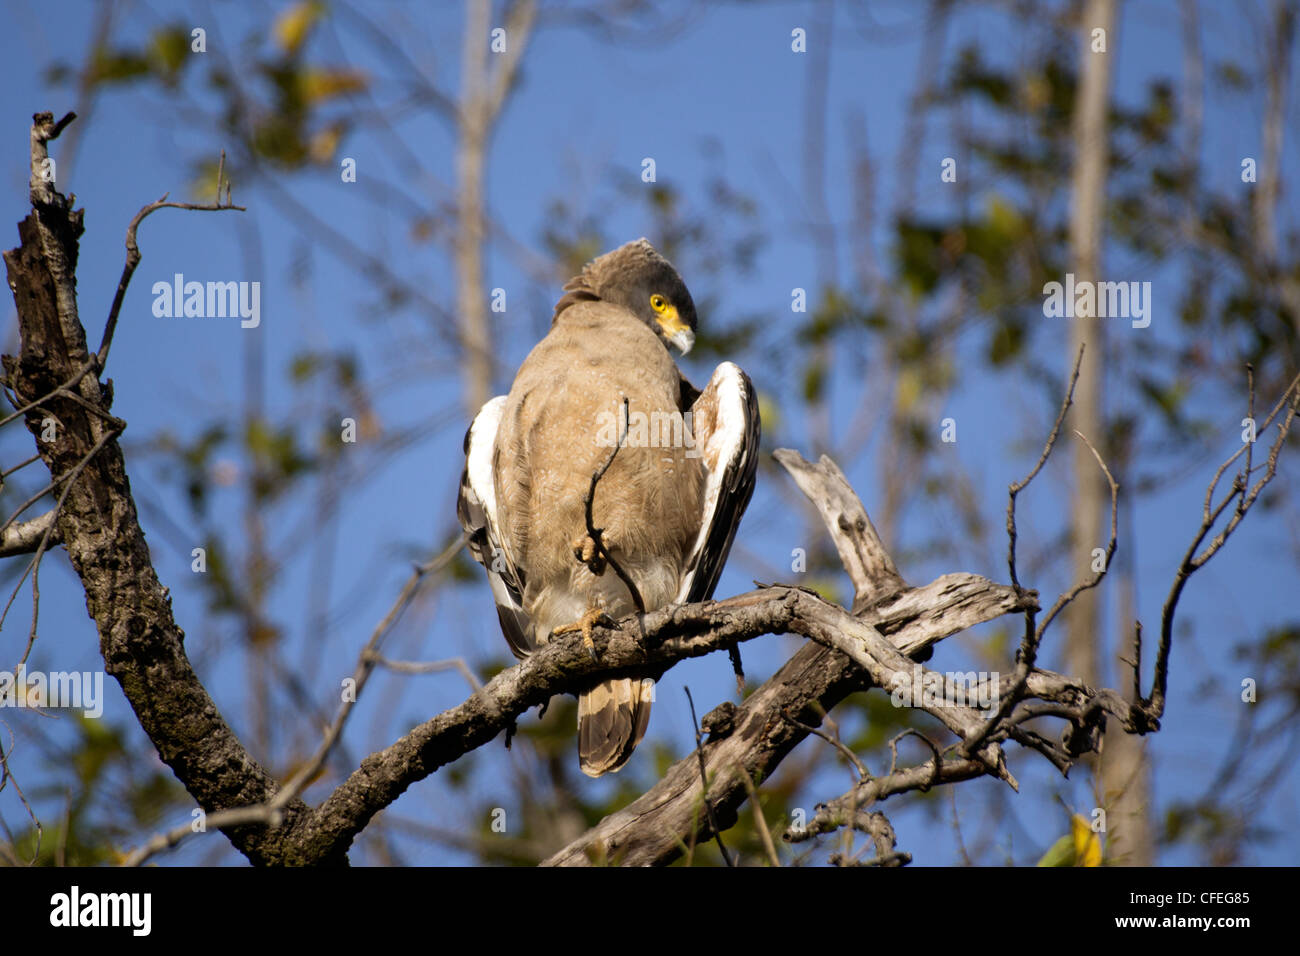 Crested Serpiente águila sobre un árbol en el Parque Nacional Bandhavgarh Foto de stock